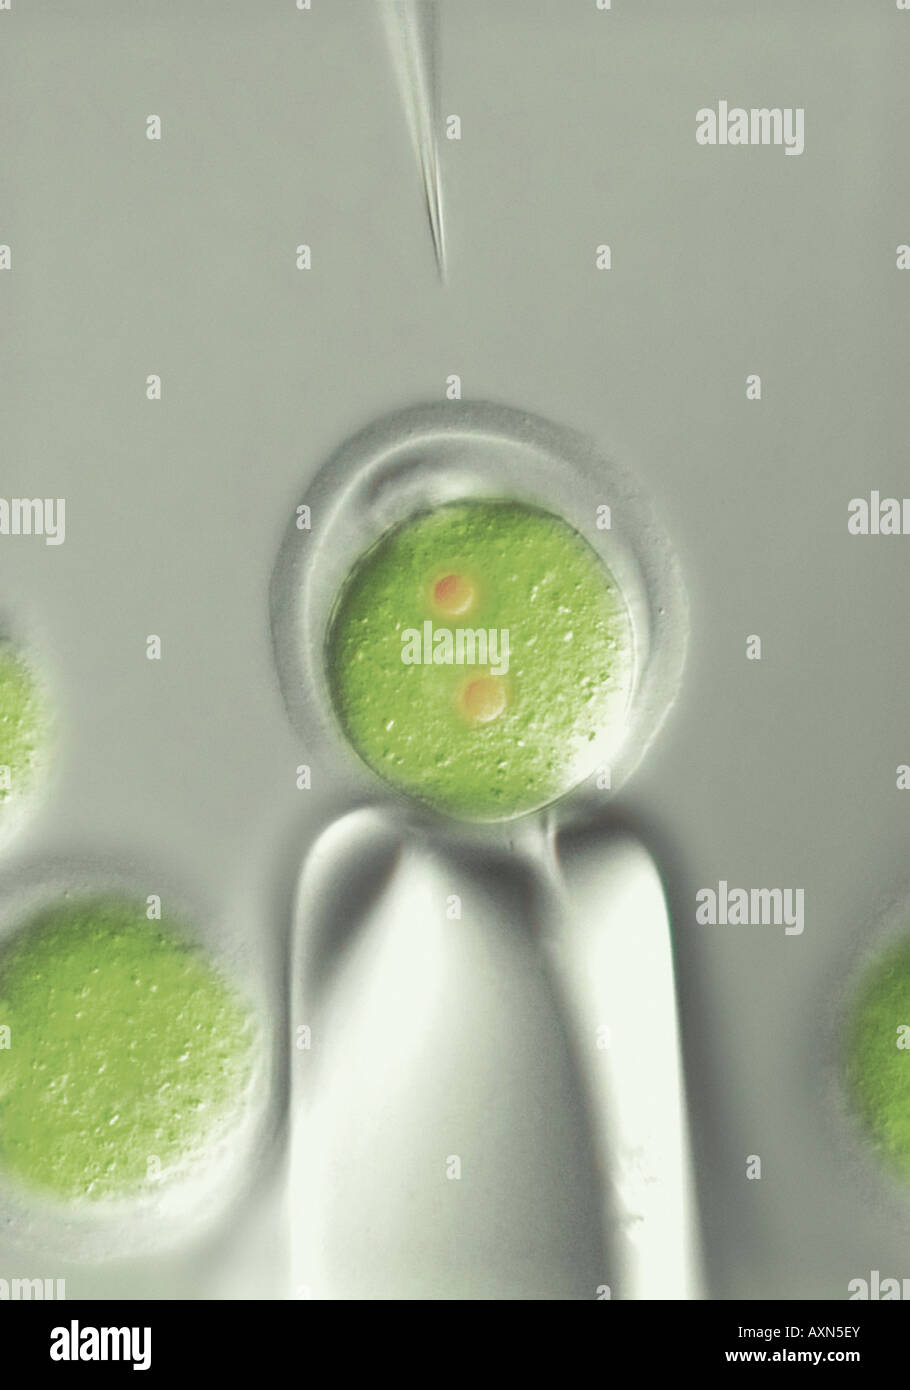 La microinjection de clonage de cellules souches embryonnaires humaines les cellules ES en ovule fécondé Banque D'Images